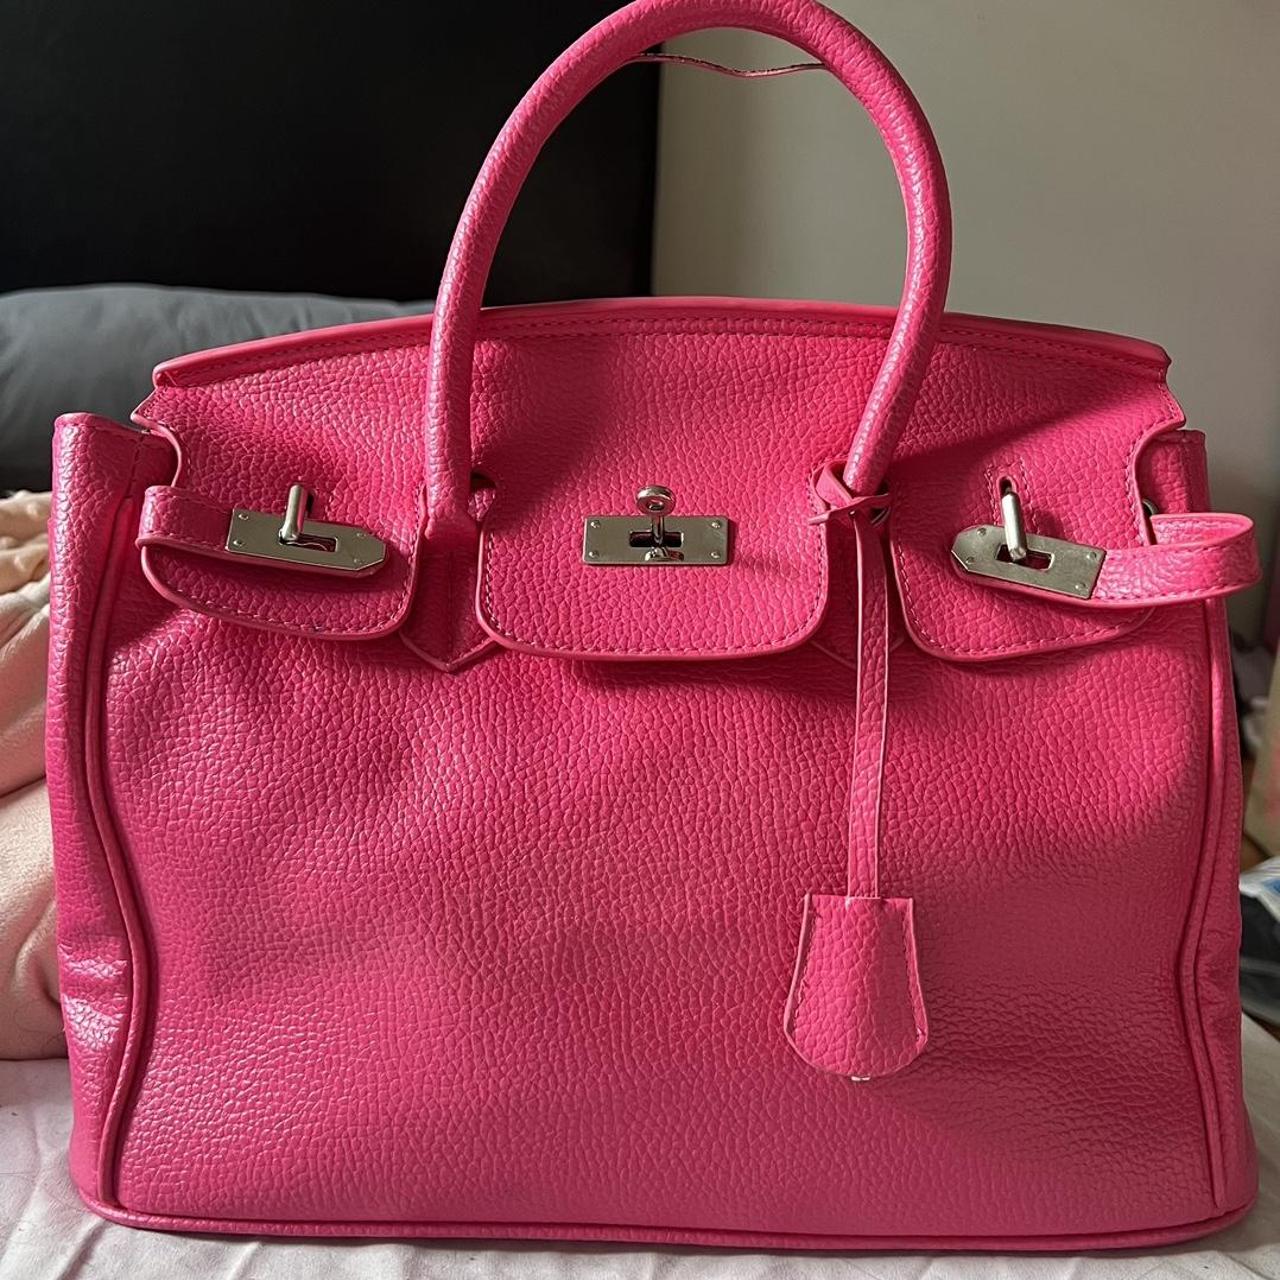 Hot Pink Hand Bag - has a few flaws, but can still... - Depop